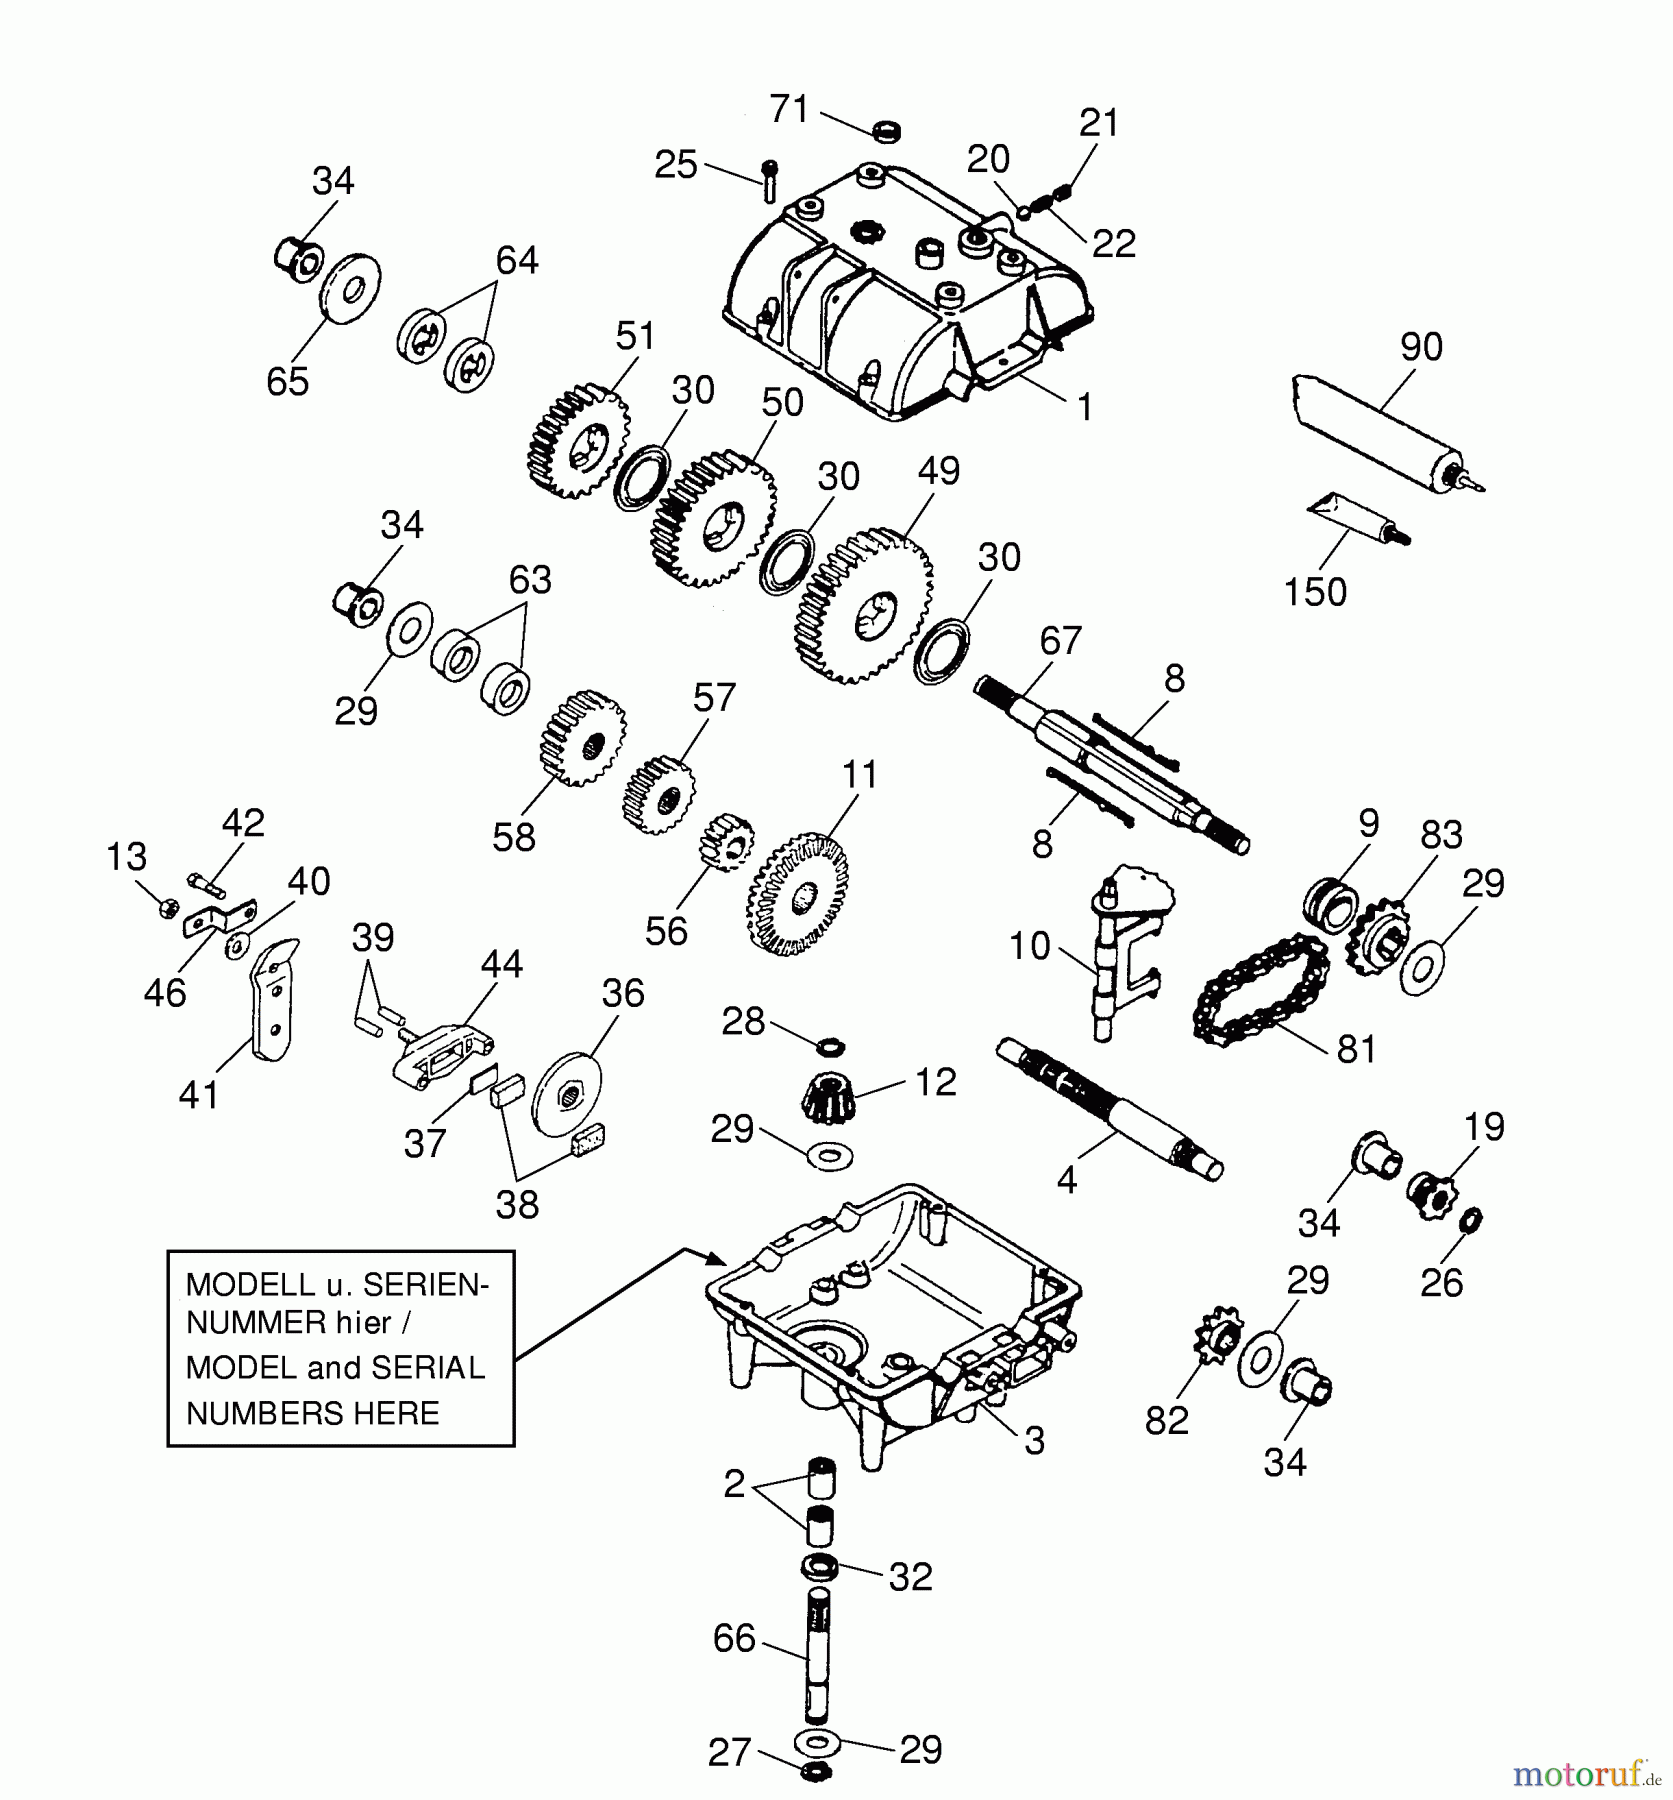  Wolf-Garten Scooter OHV 3 6990000 Serie B, C  (1999) Getriebe